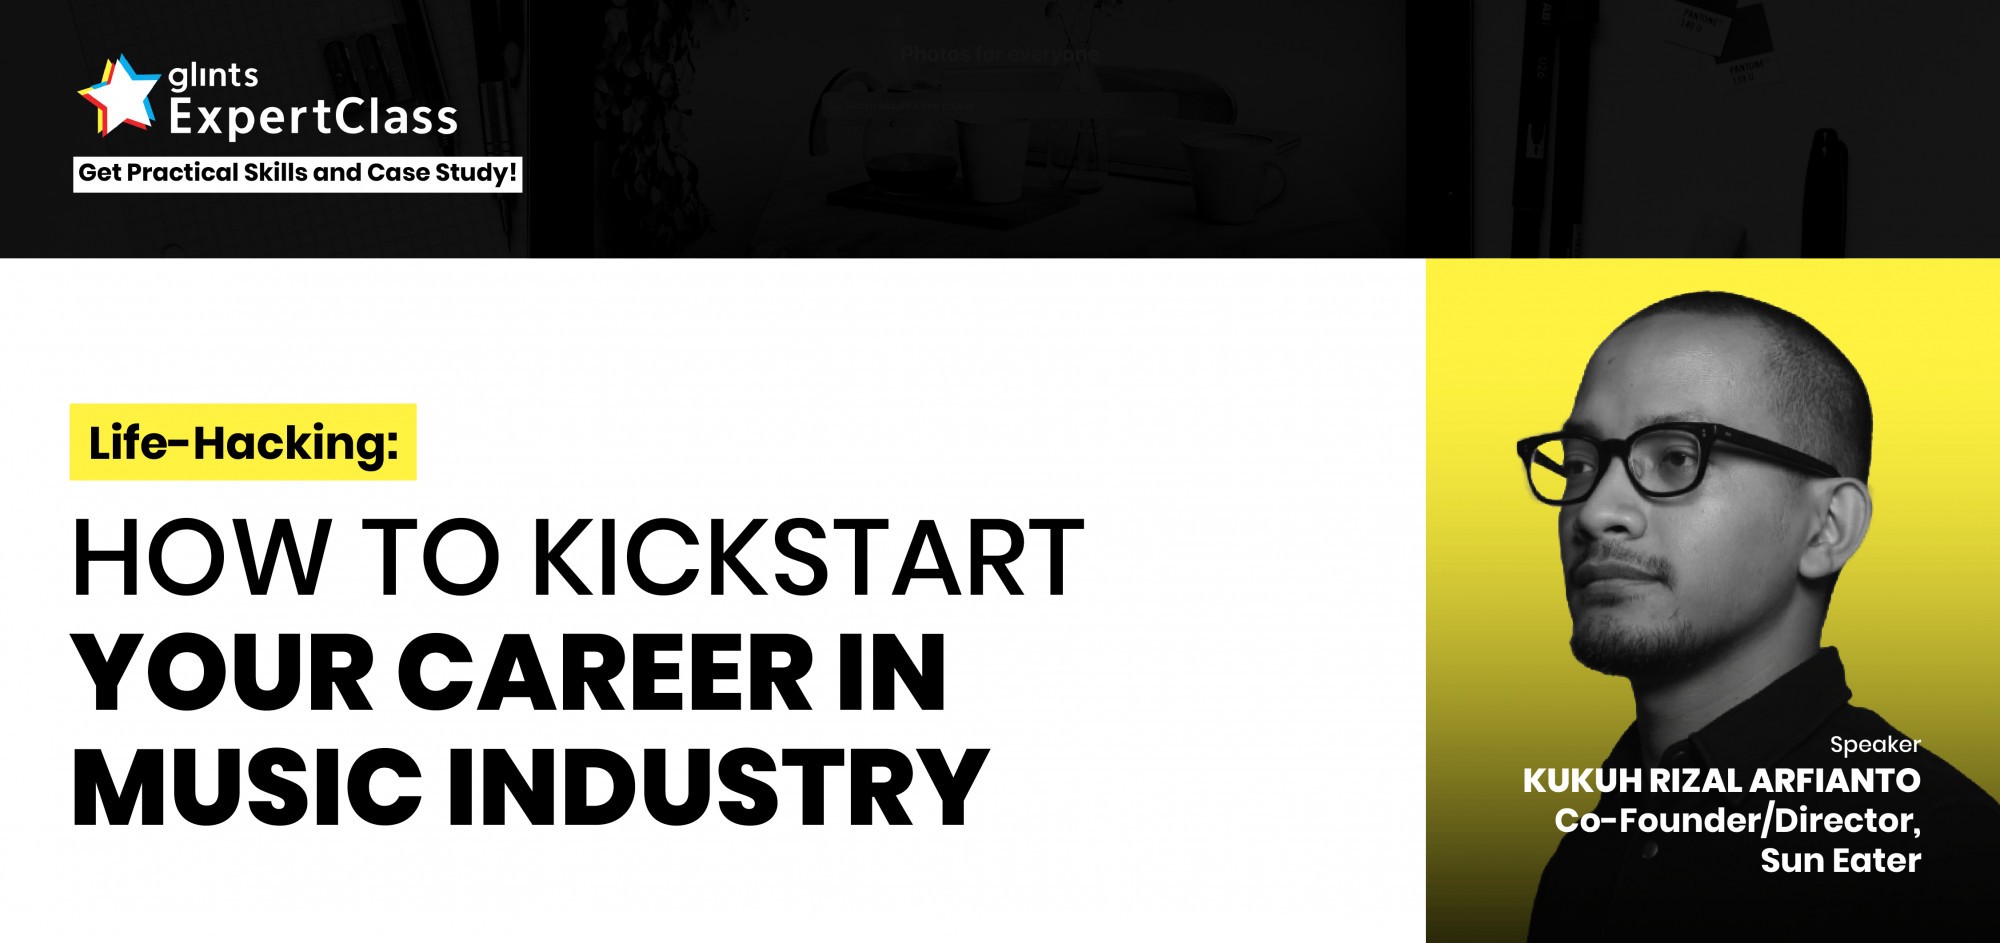 [Online Glints ExpertClass] How To Kickstart Your Career In Music Industry